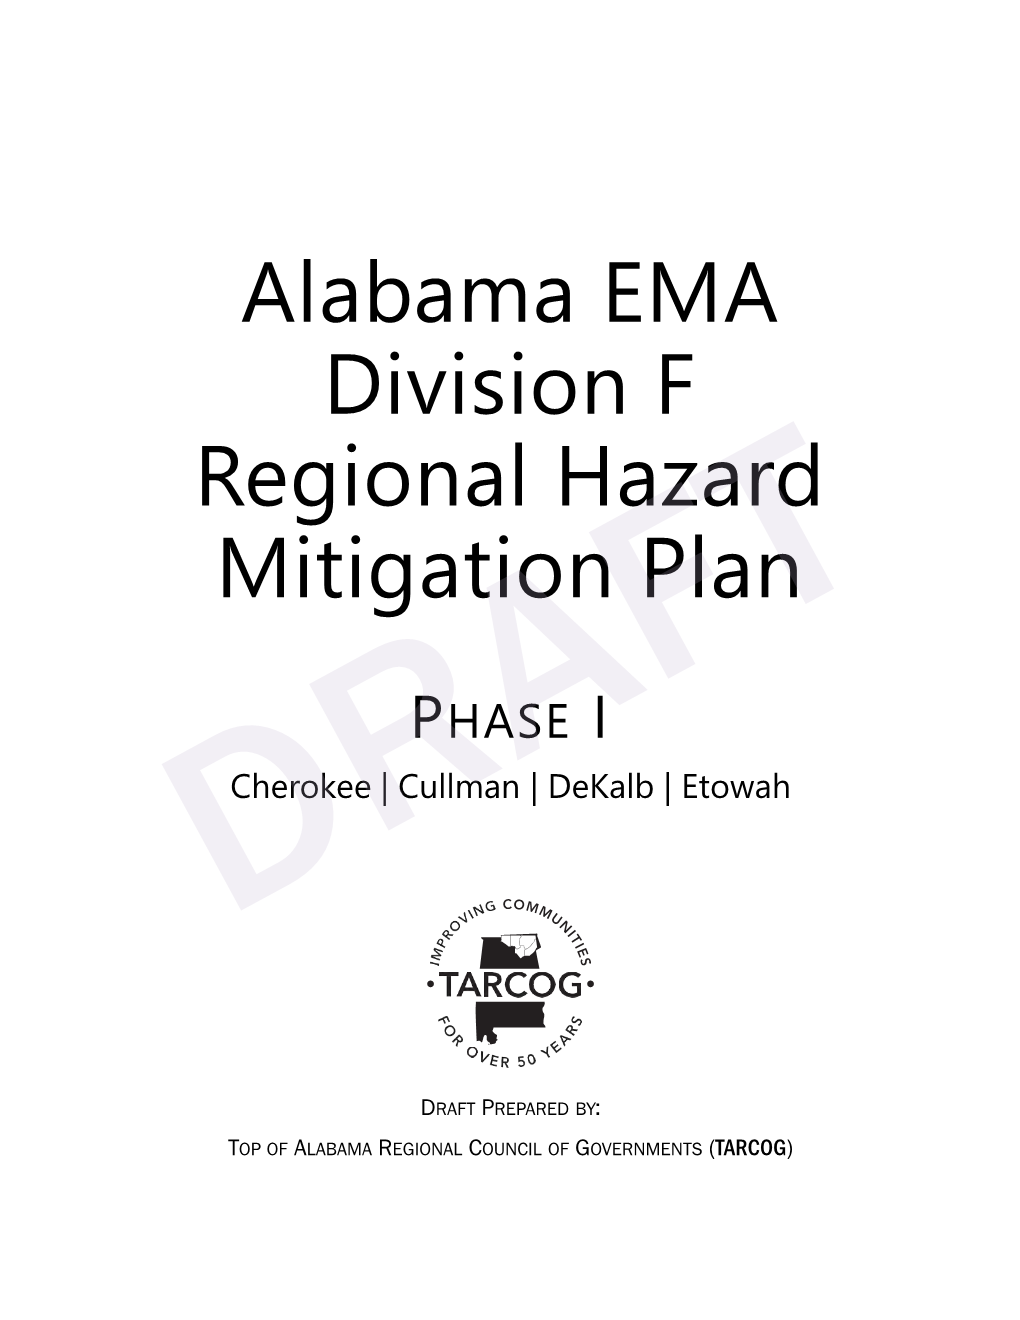 Alabama EMA Division F Regional Hazard Mitigation Plan